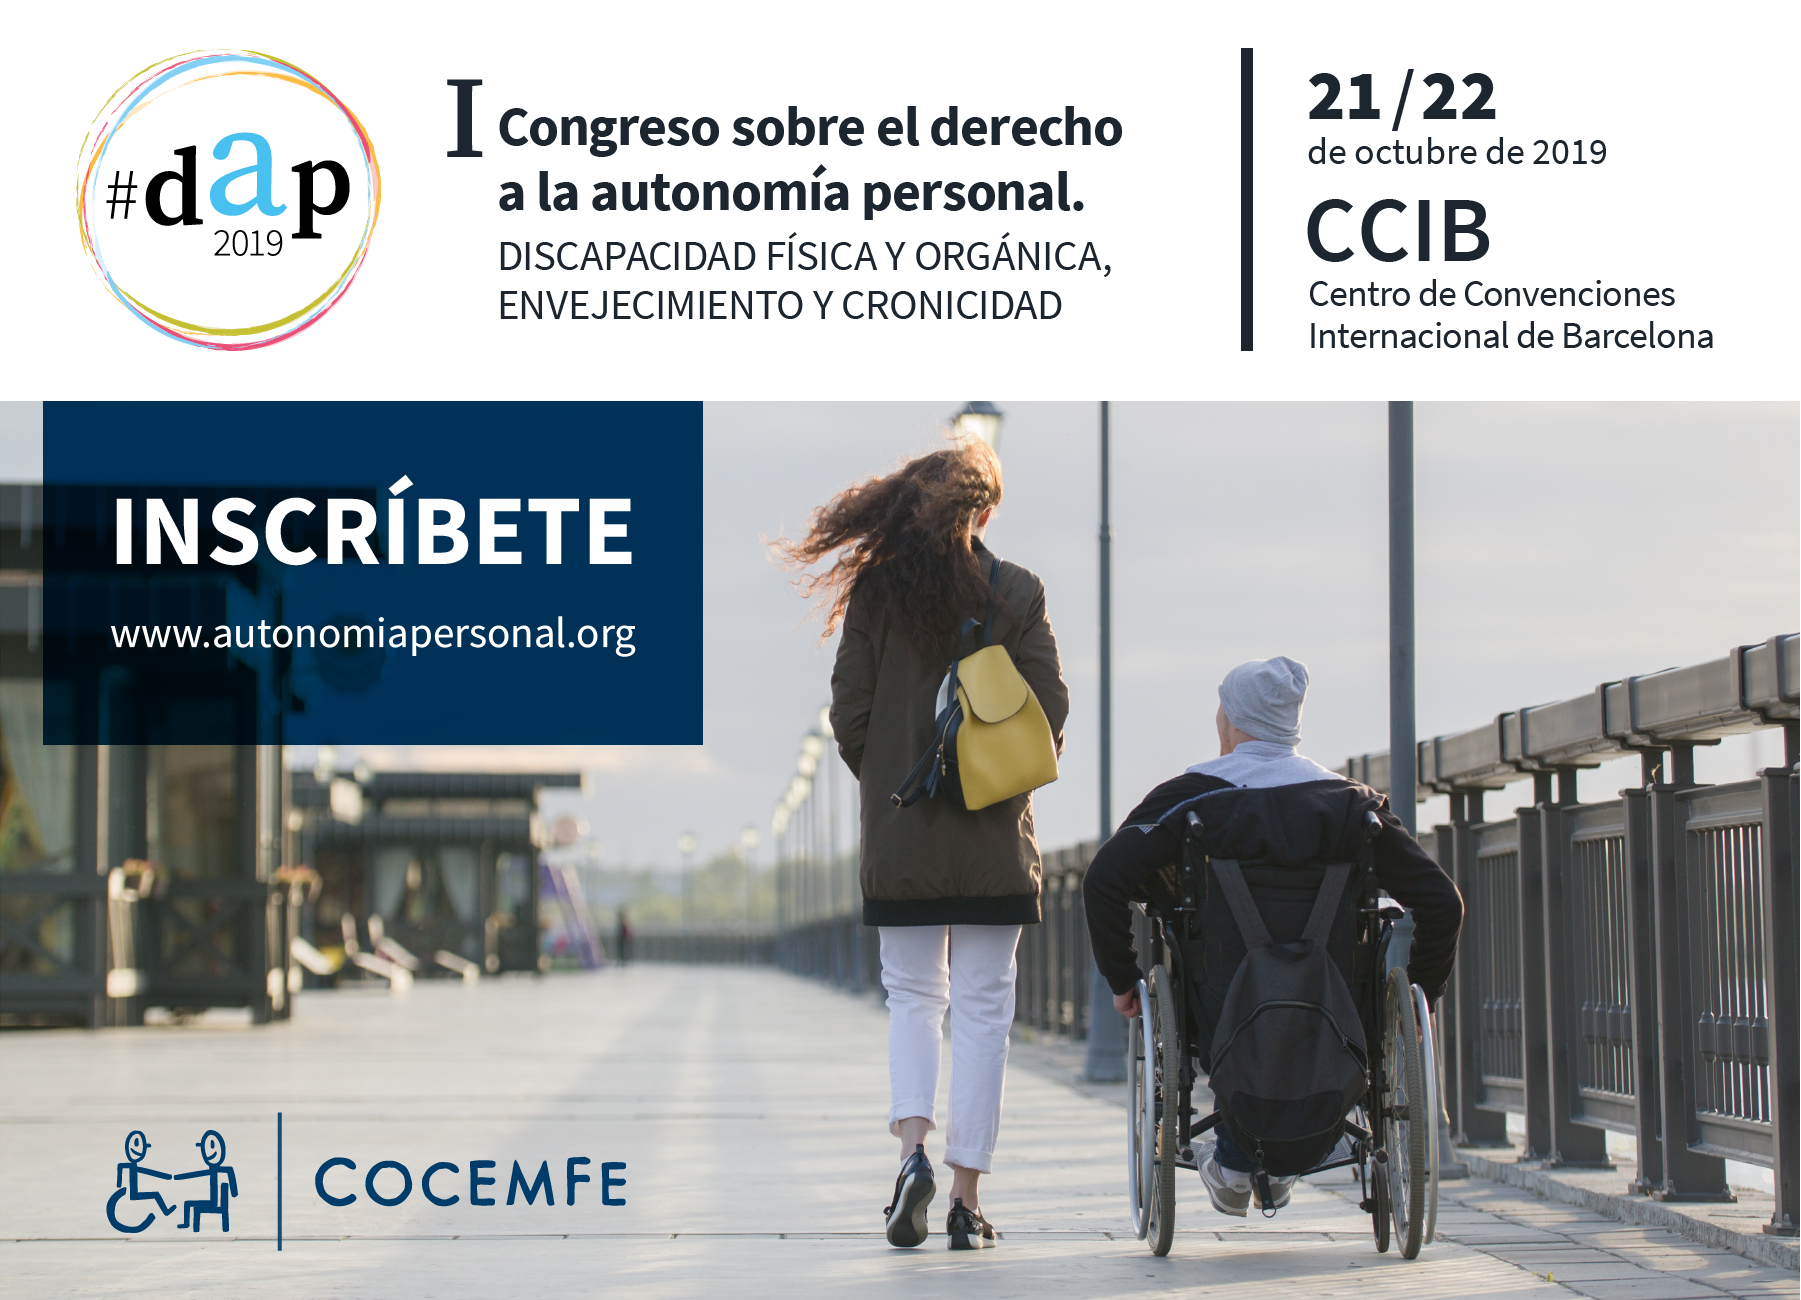 Registro para asistir al I Congreso sobre el derecho a la autonomía personal promovido por COCEMFE